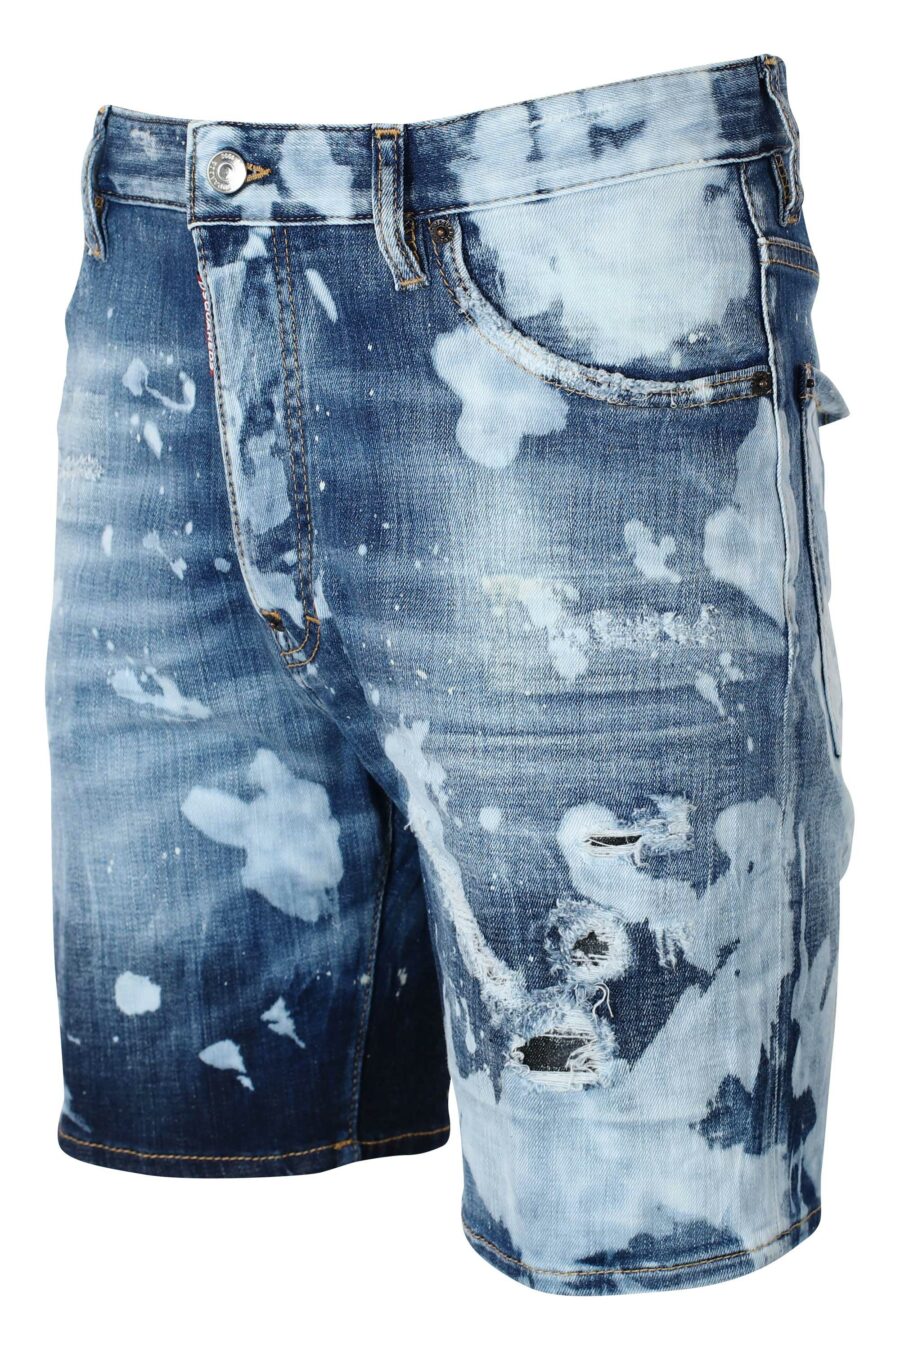 Pantalón vaquero corto azul "marine short" con manchas - IMG 9590